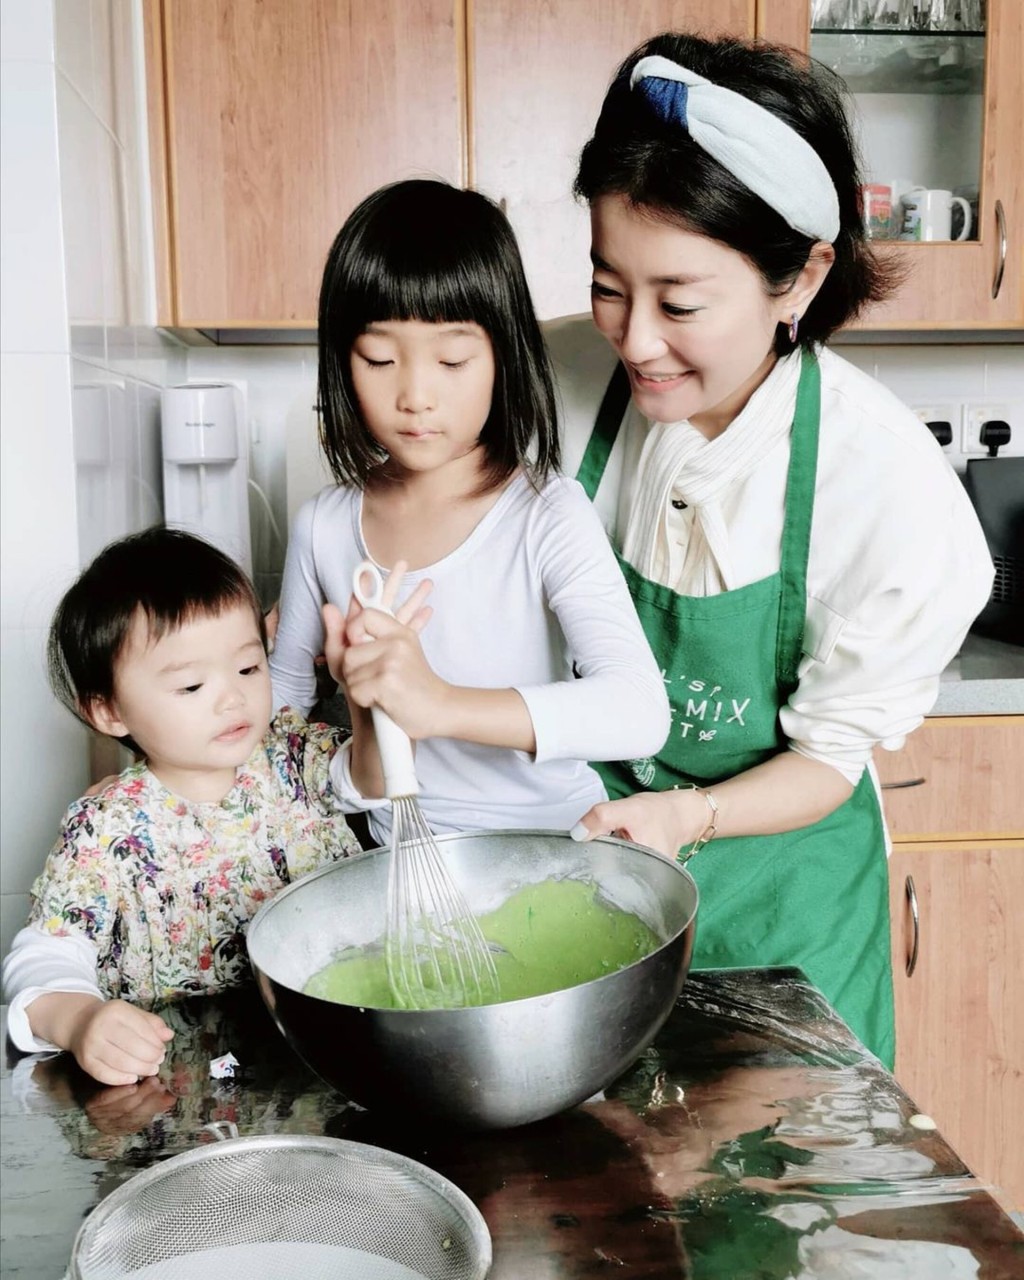 张新悦经常与囡囡在家中的大厨房玩下厨乐。